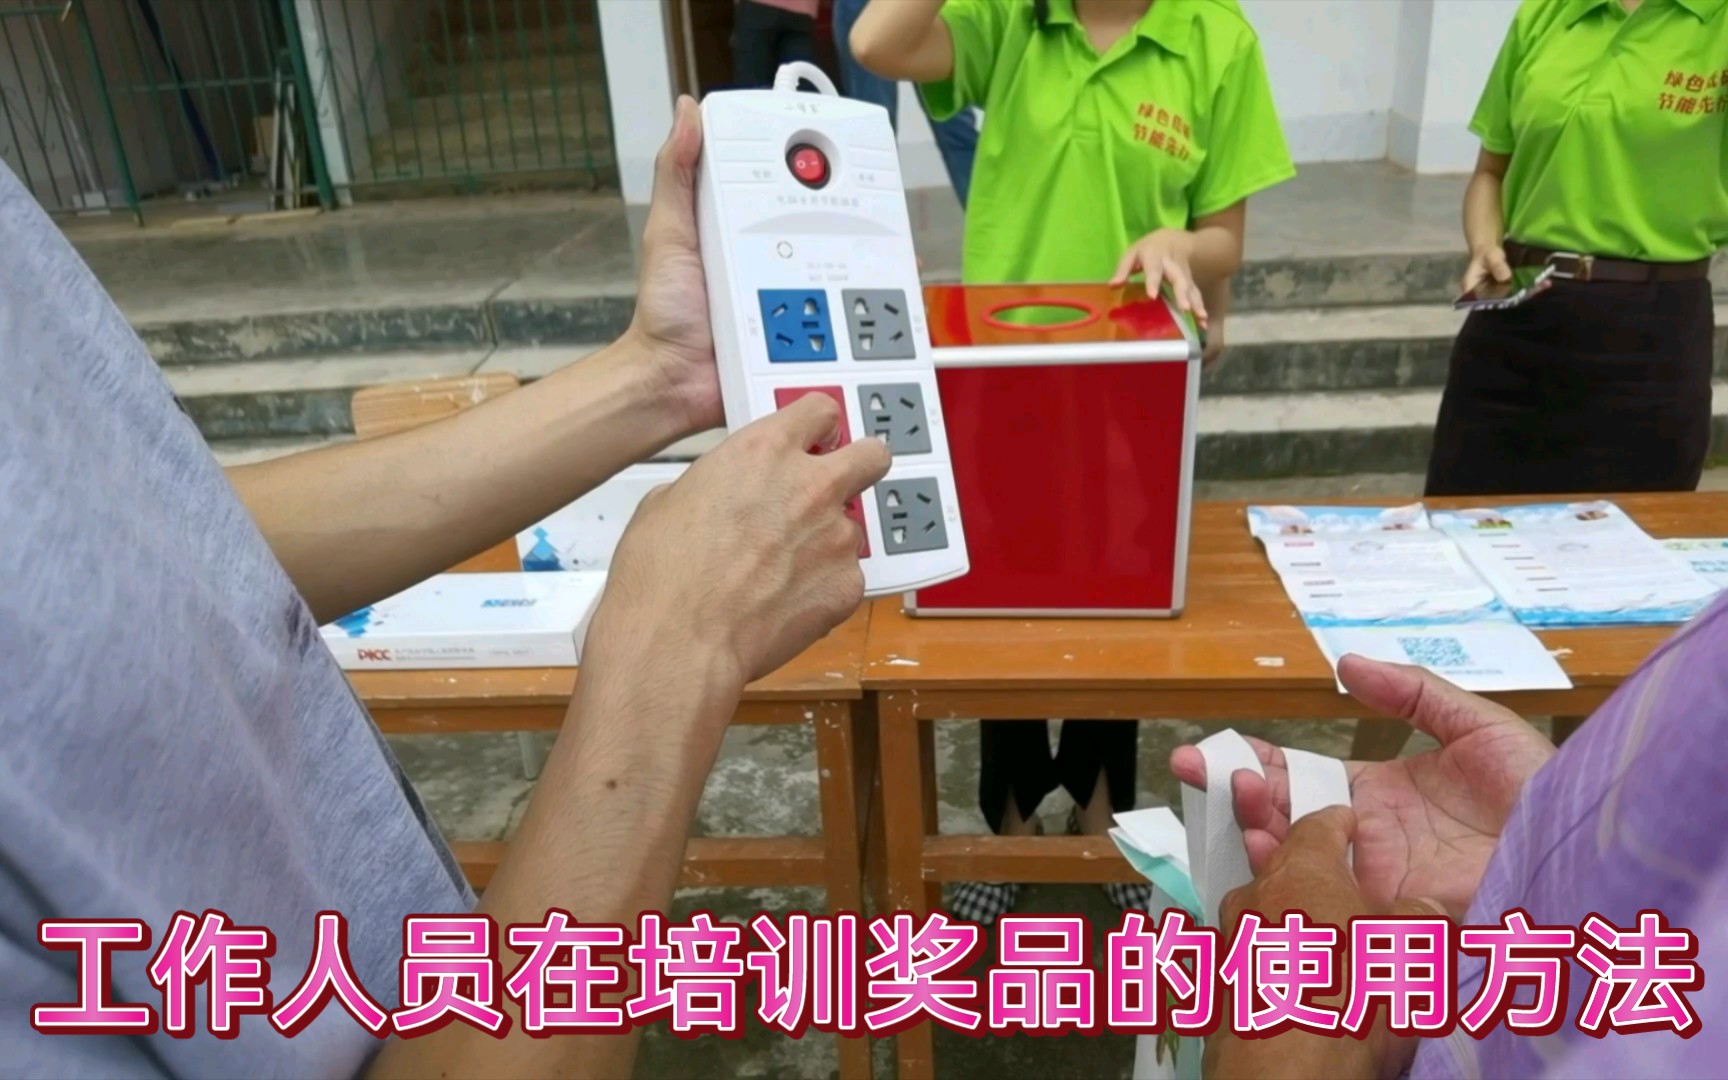 广西电视台《第一书记》栏目组到那坡县拍摄专题片